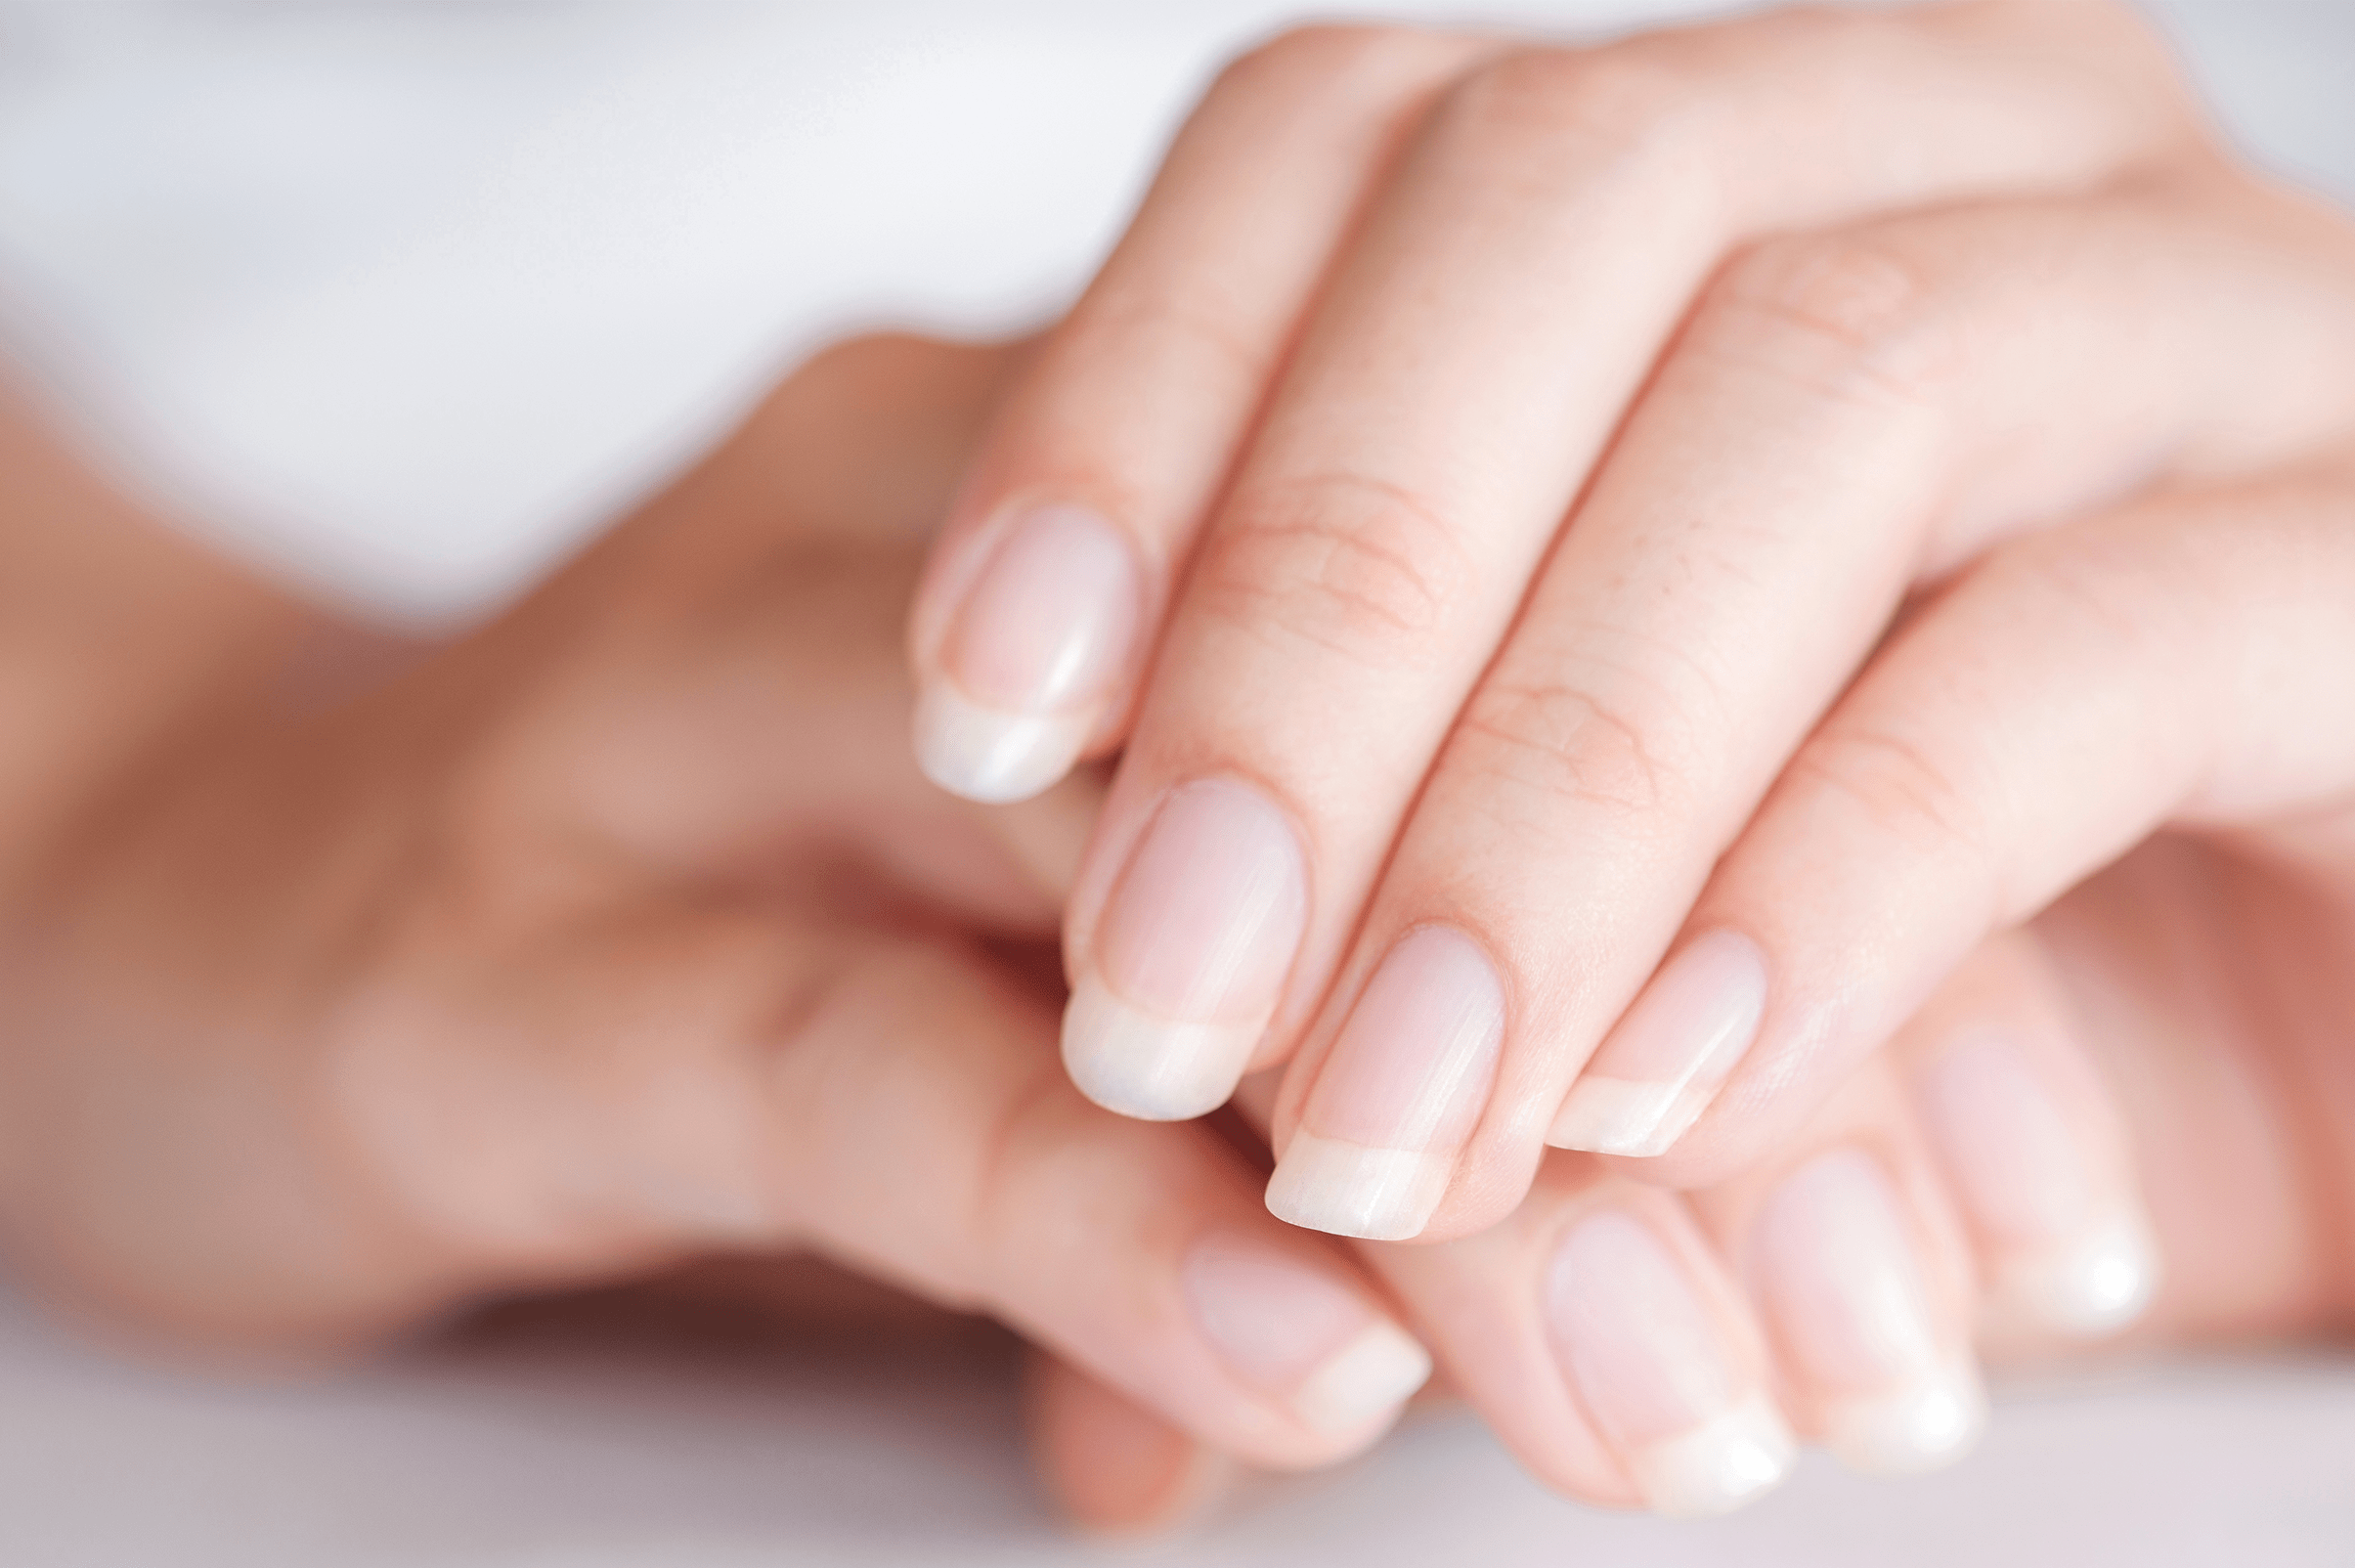 mitos sobre as unhas